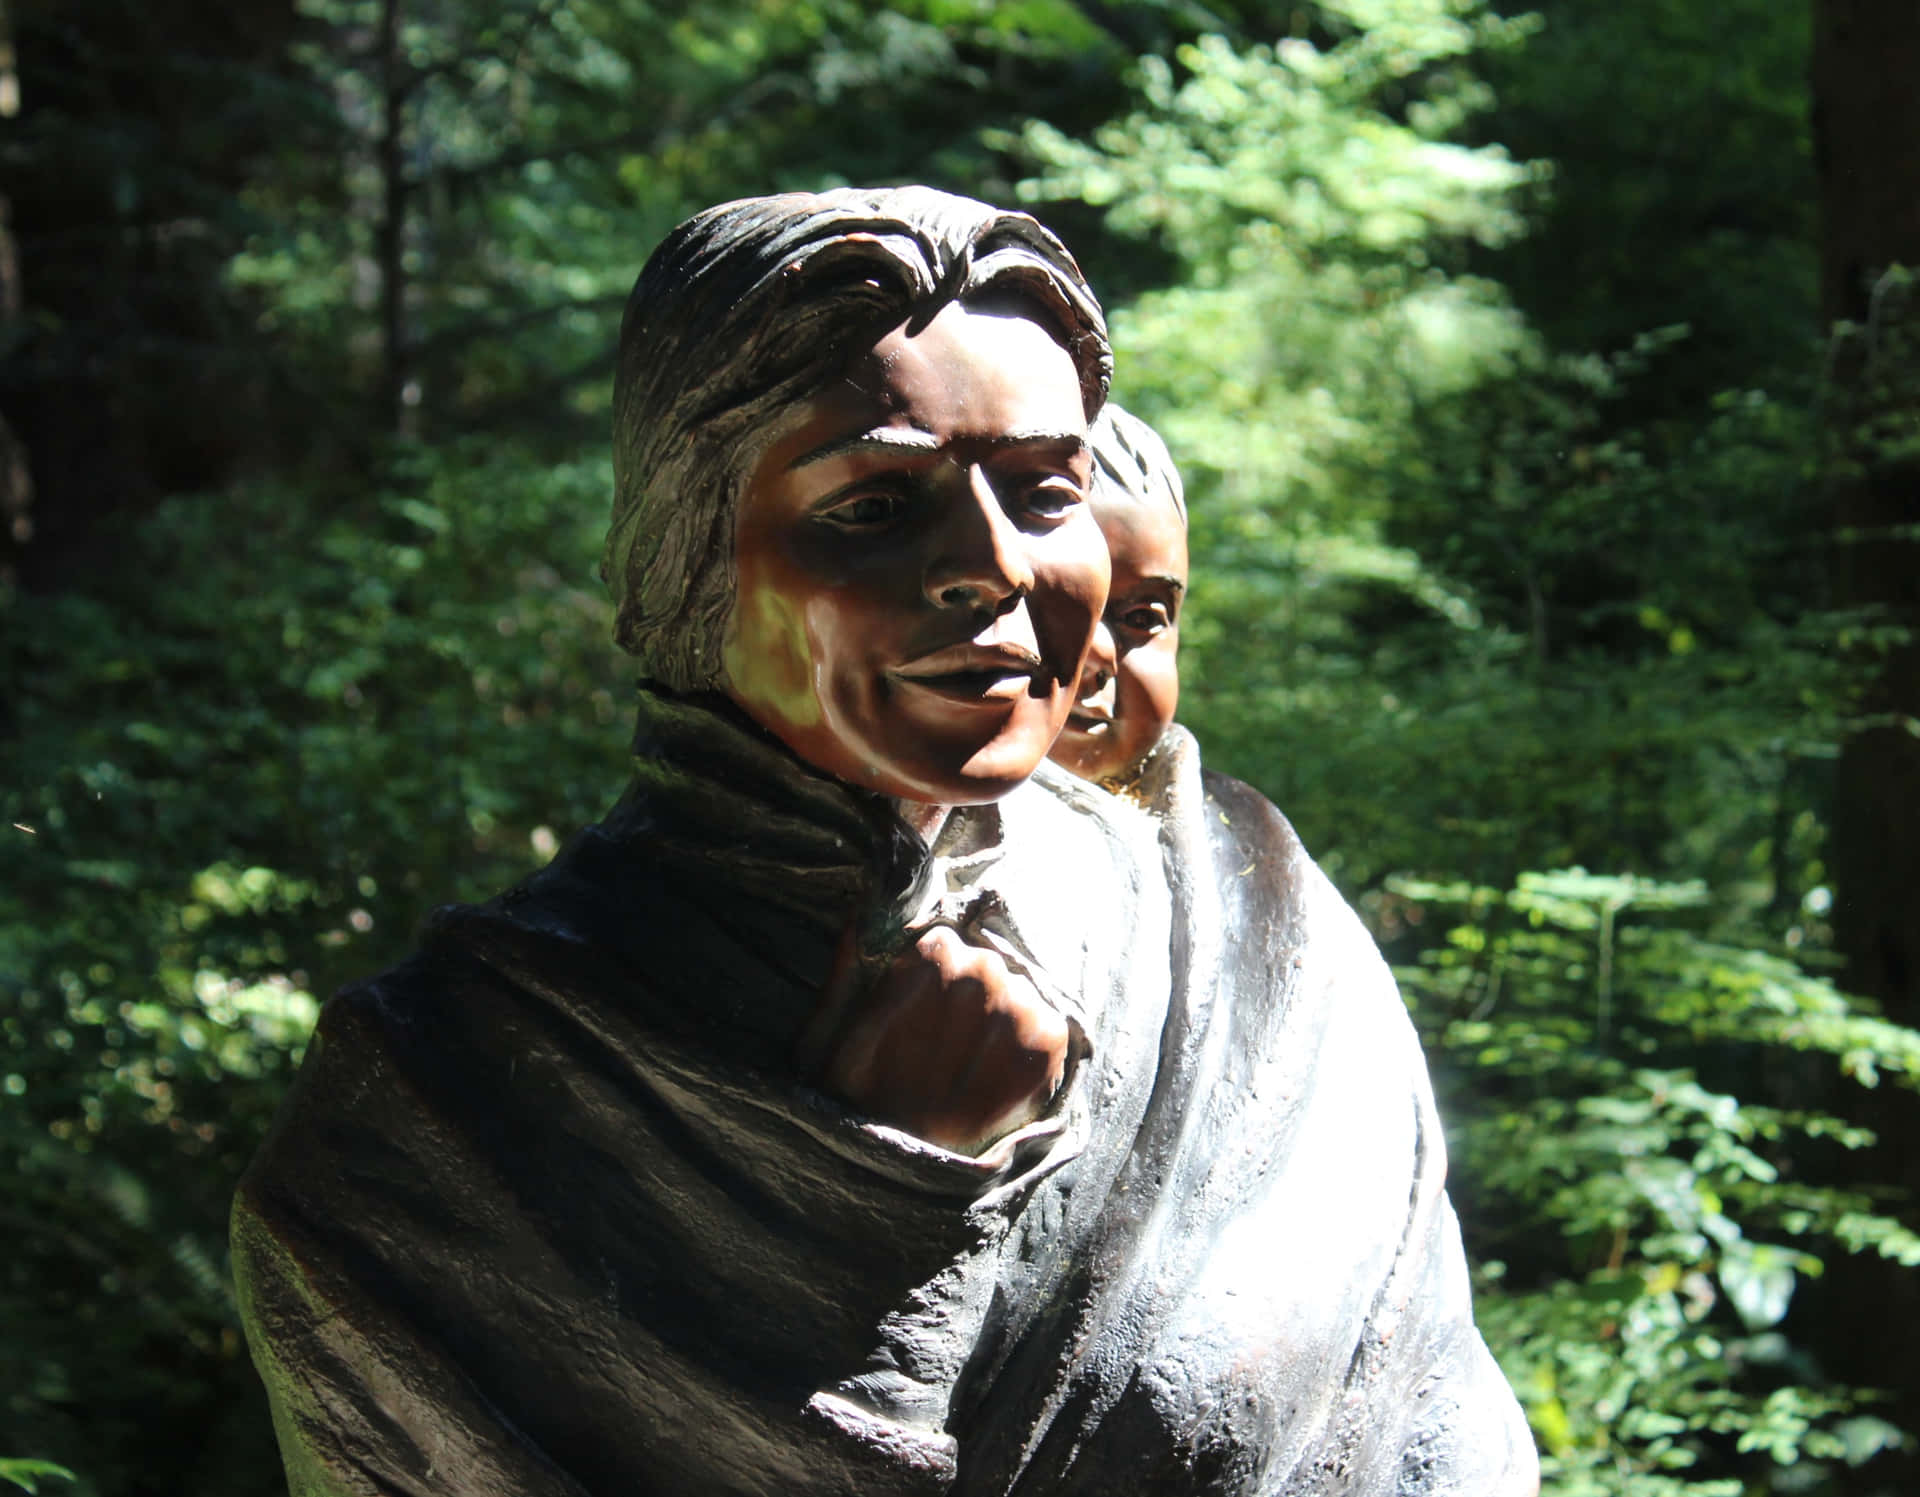 American Explorer Sacagawea.